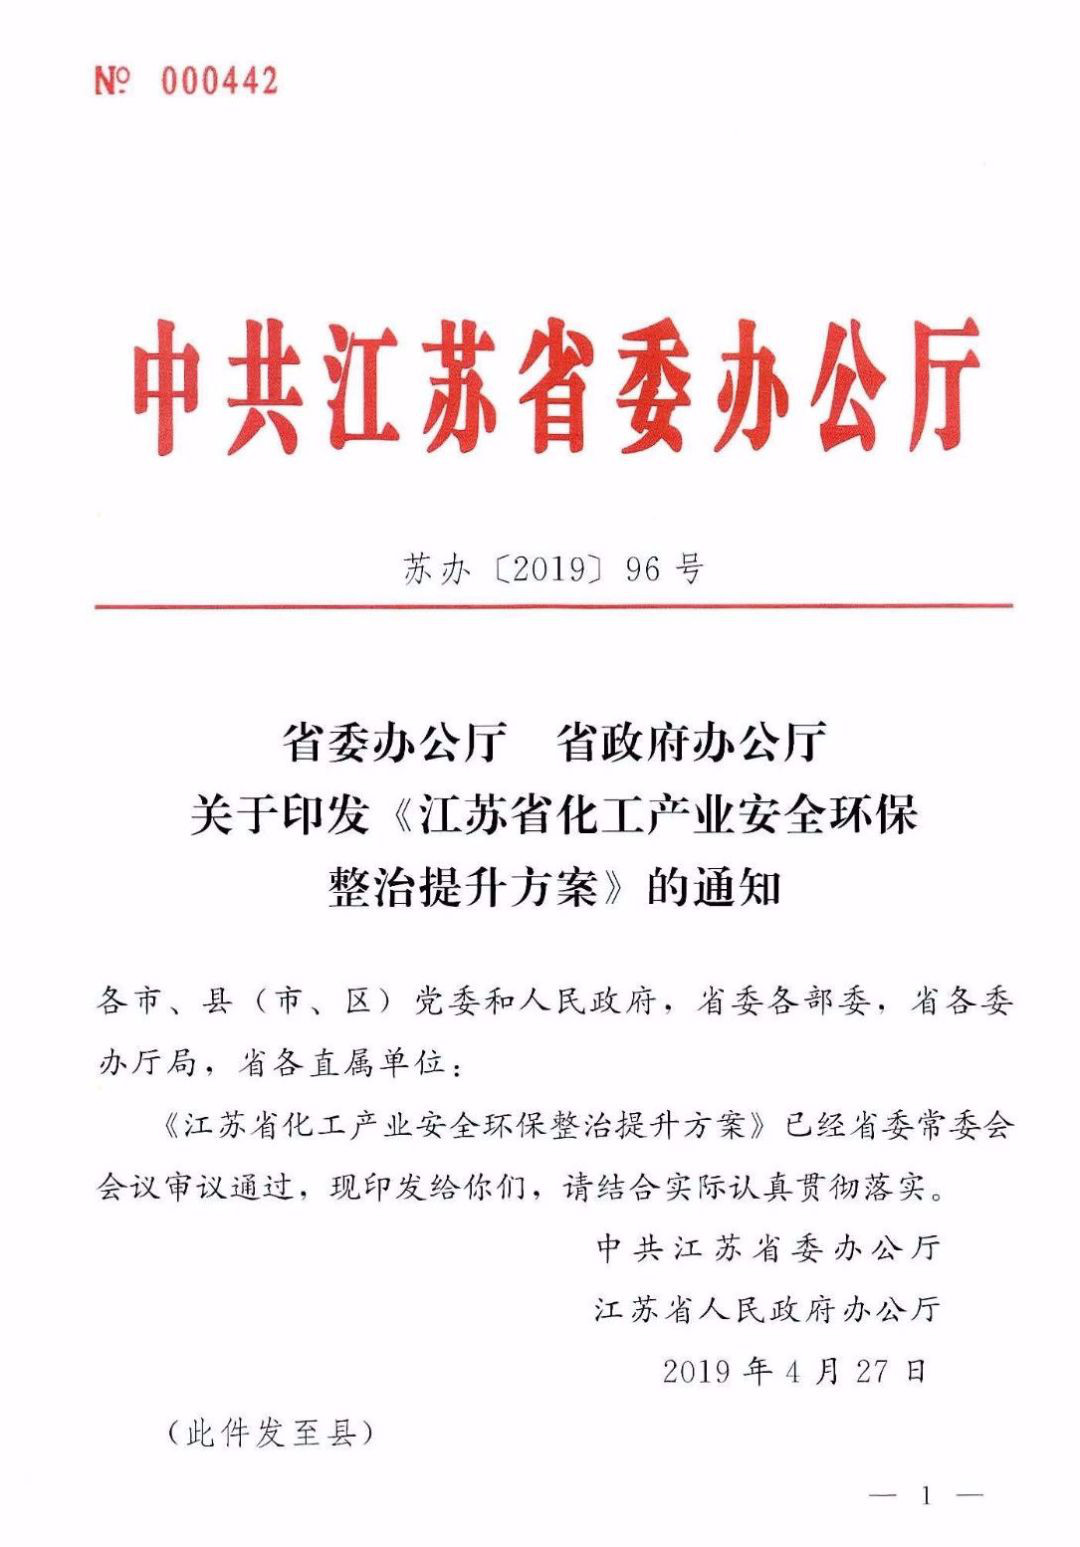 《江苏省化工产业安全环保整治提升方案》发布，给出企业和园区退出时间表